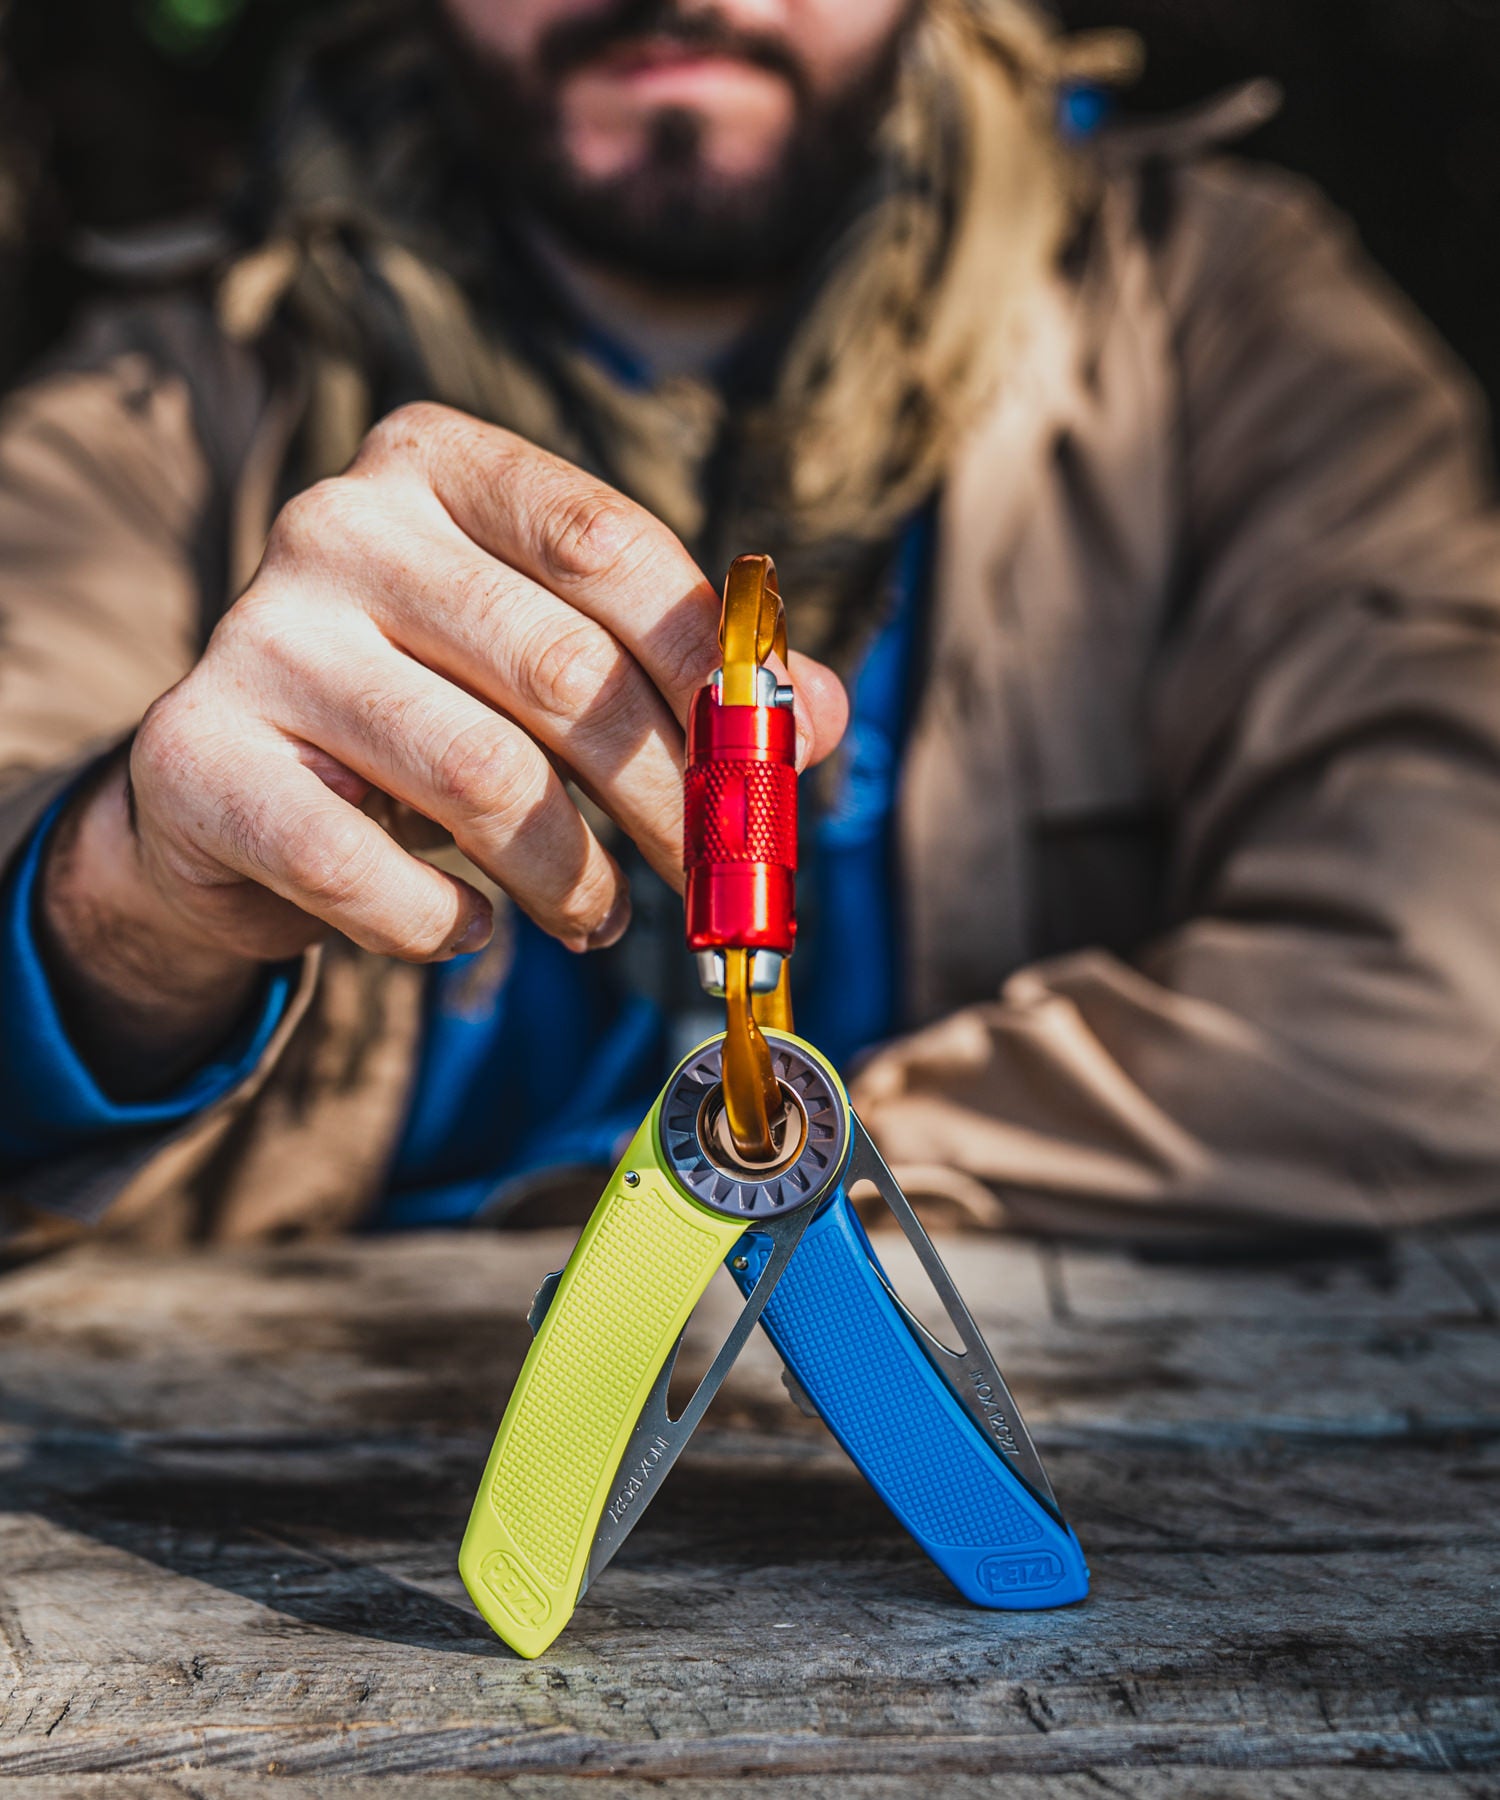 Paolo di BackPacco mostra due coltelli spatha di petzl fissati ad un moschettone petzl da arrampicata